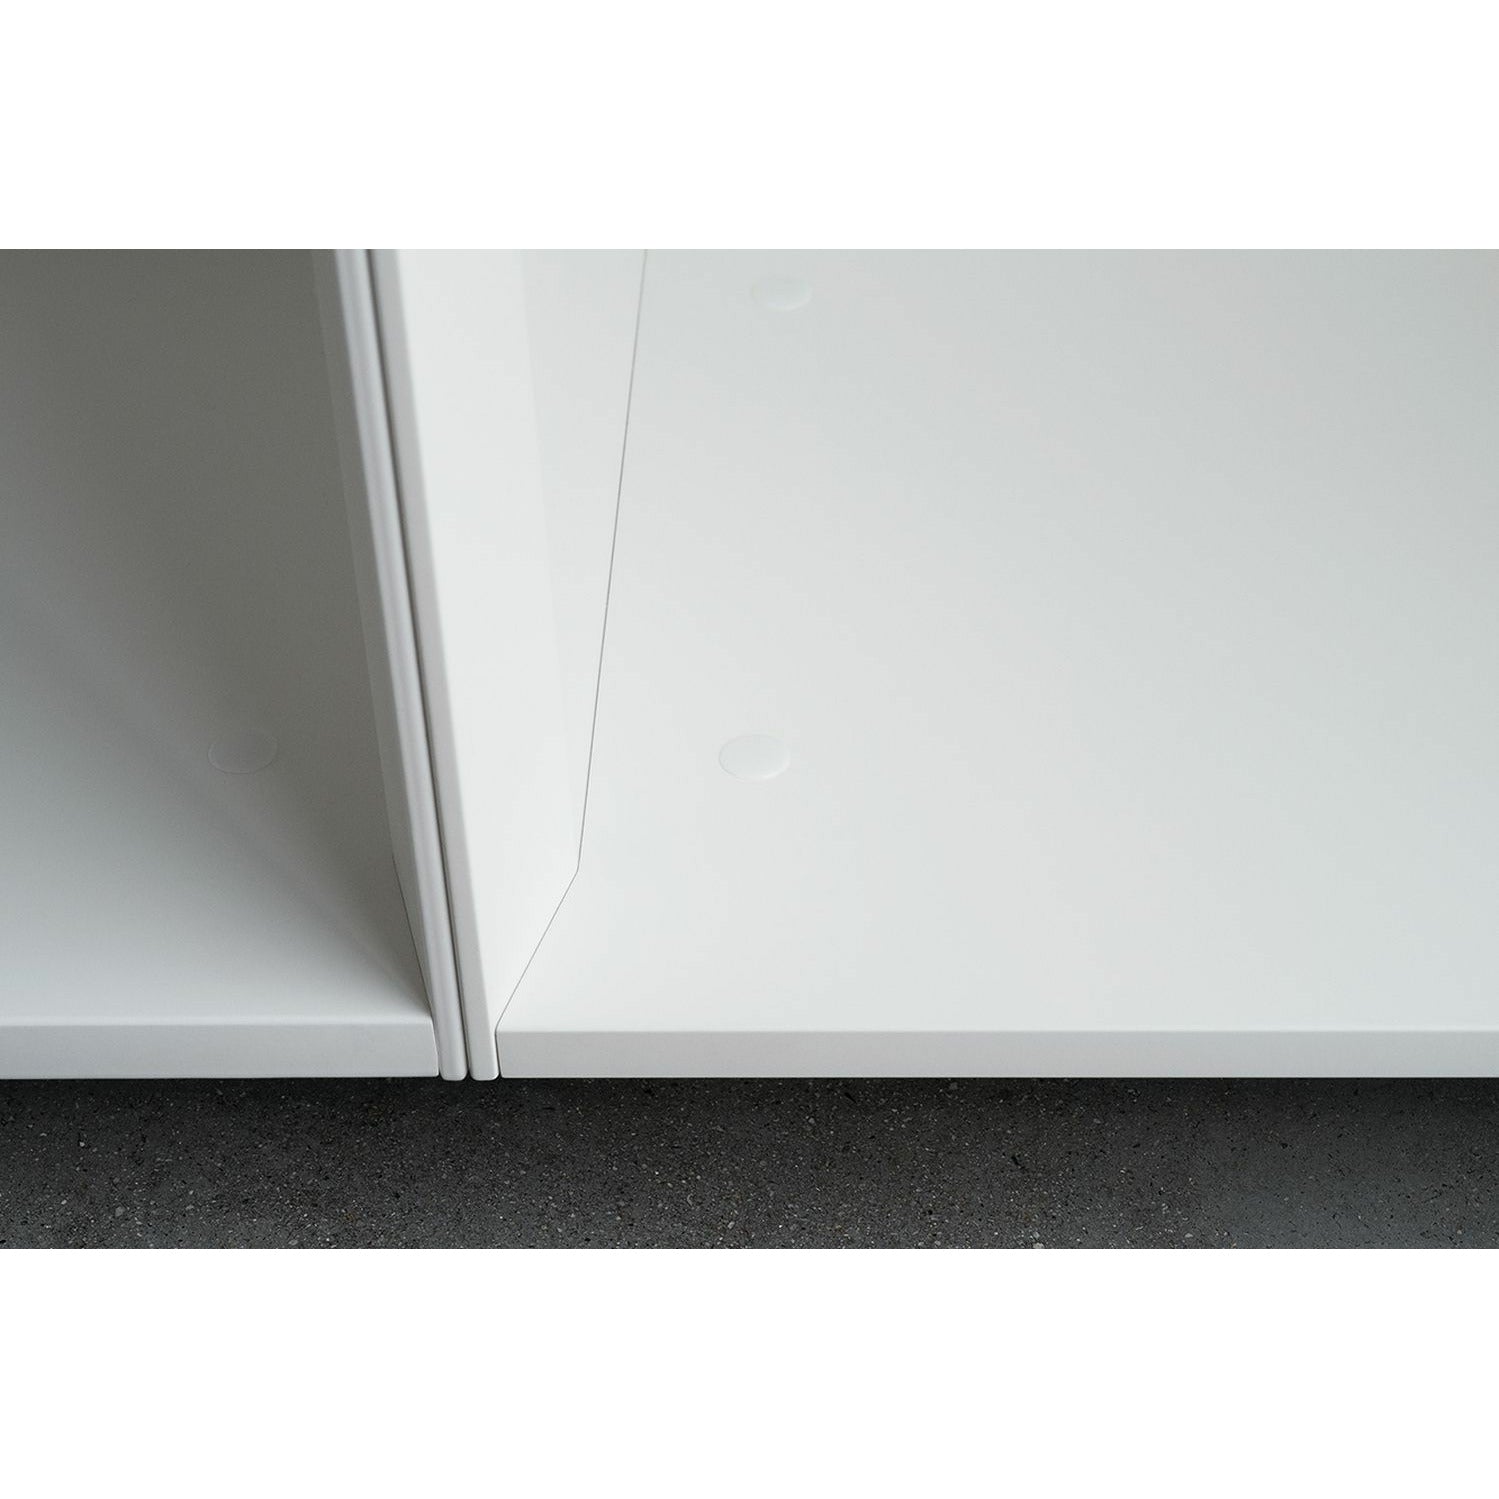 Piure Nex Pur Shelf Cabinet HXB 211,5x50 cm 5 hyllor, konsoler till vänster